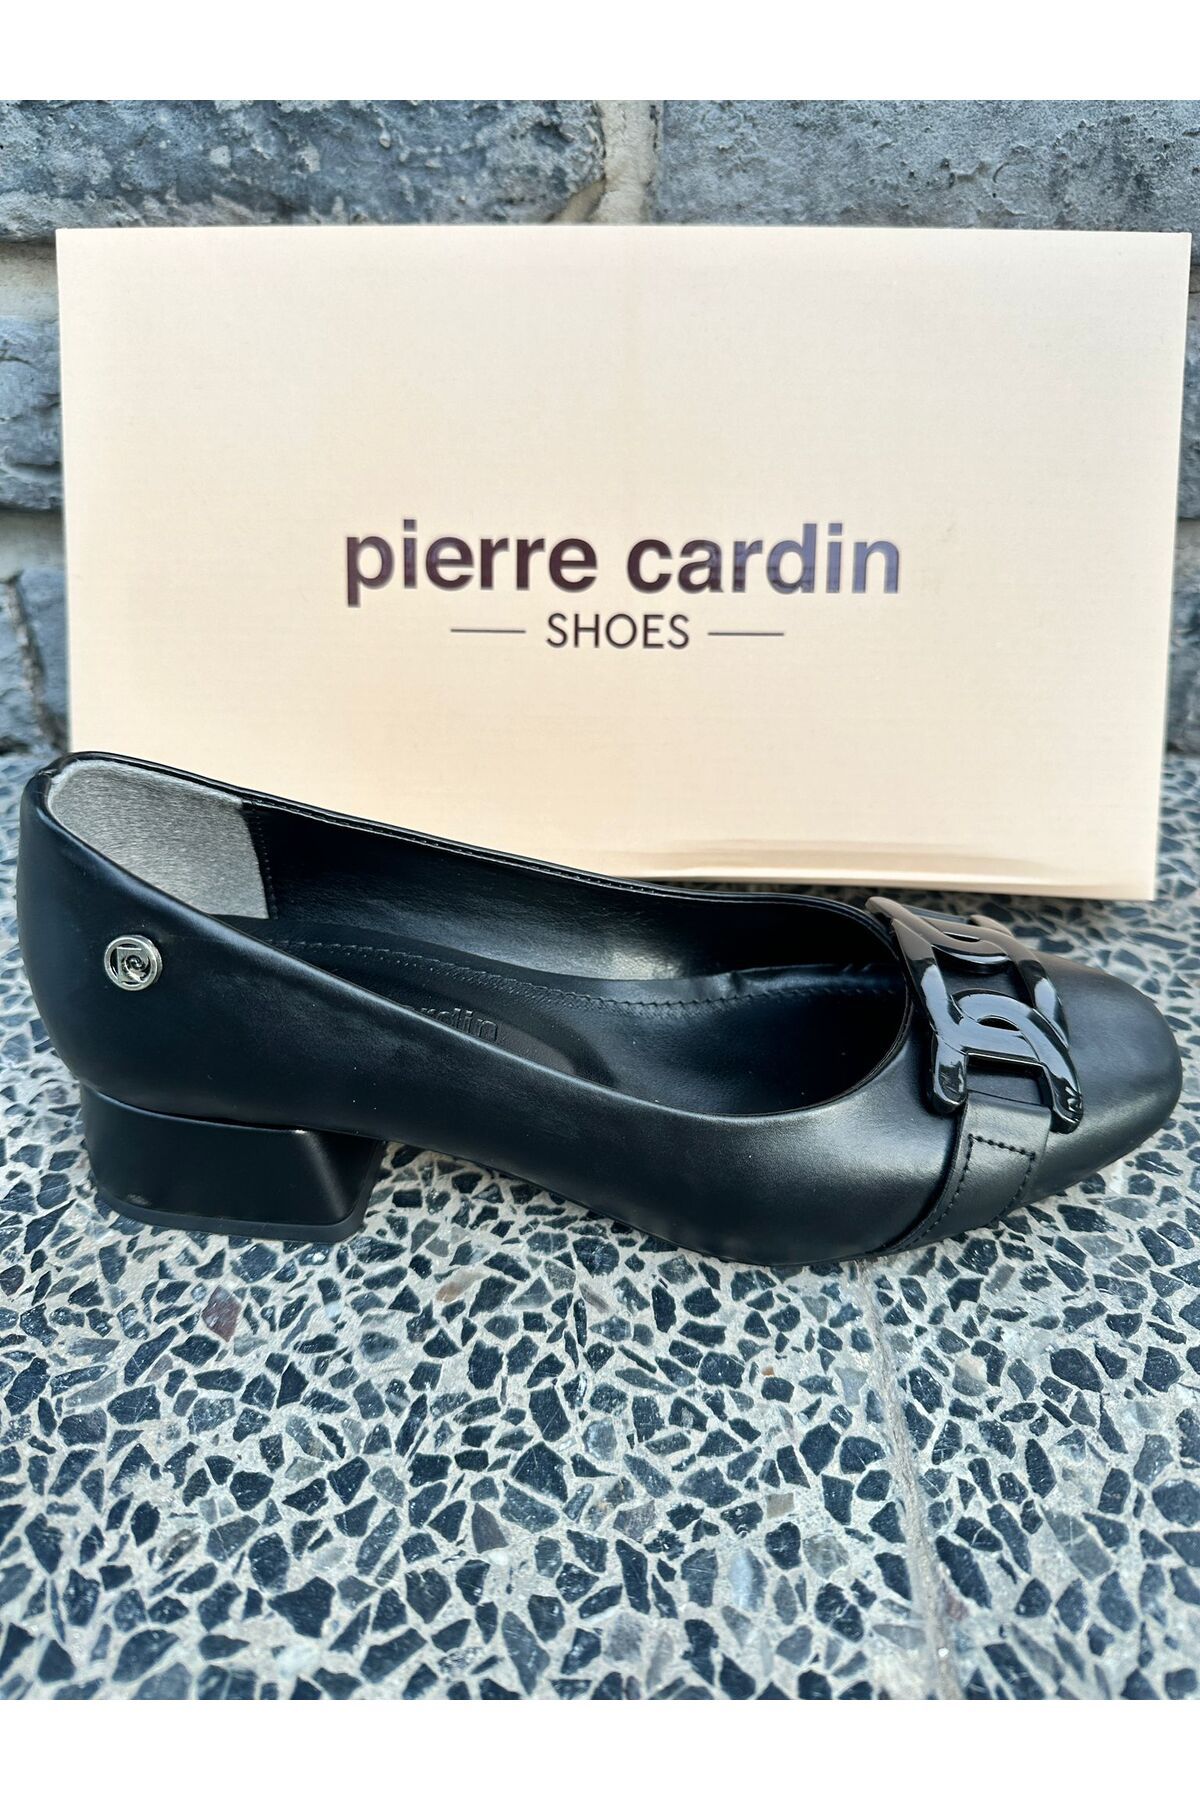 Pierre Cardin @ PC-52280 kısa topuk